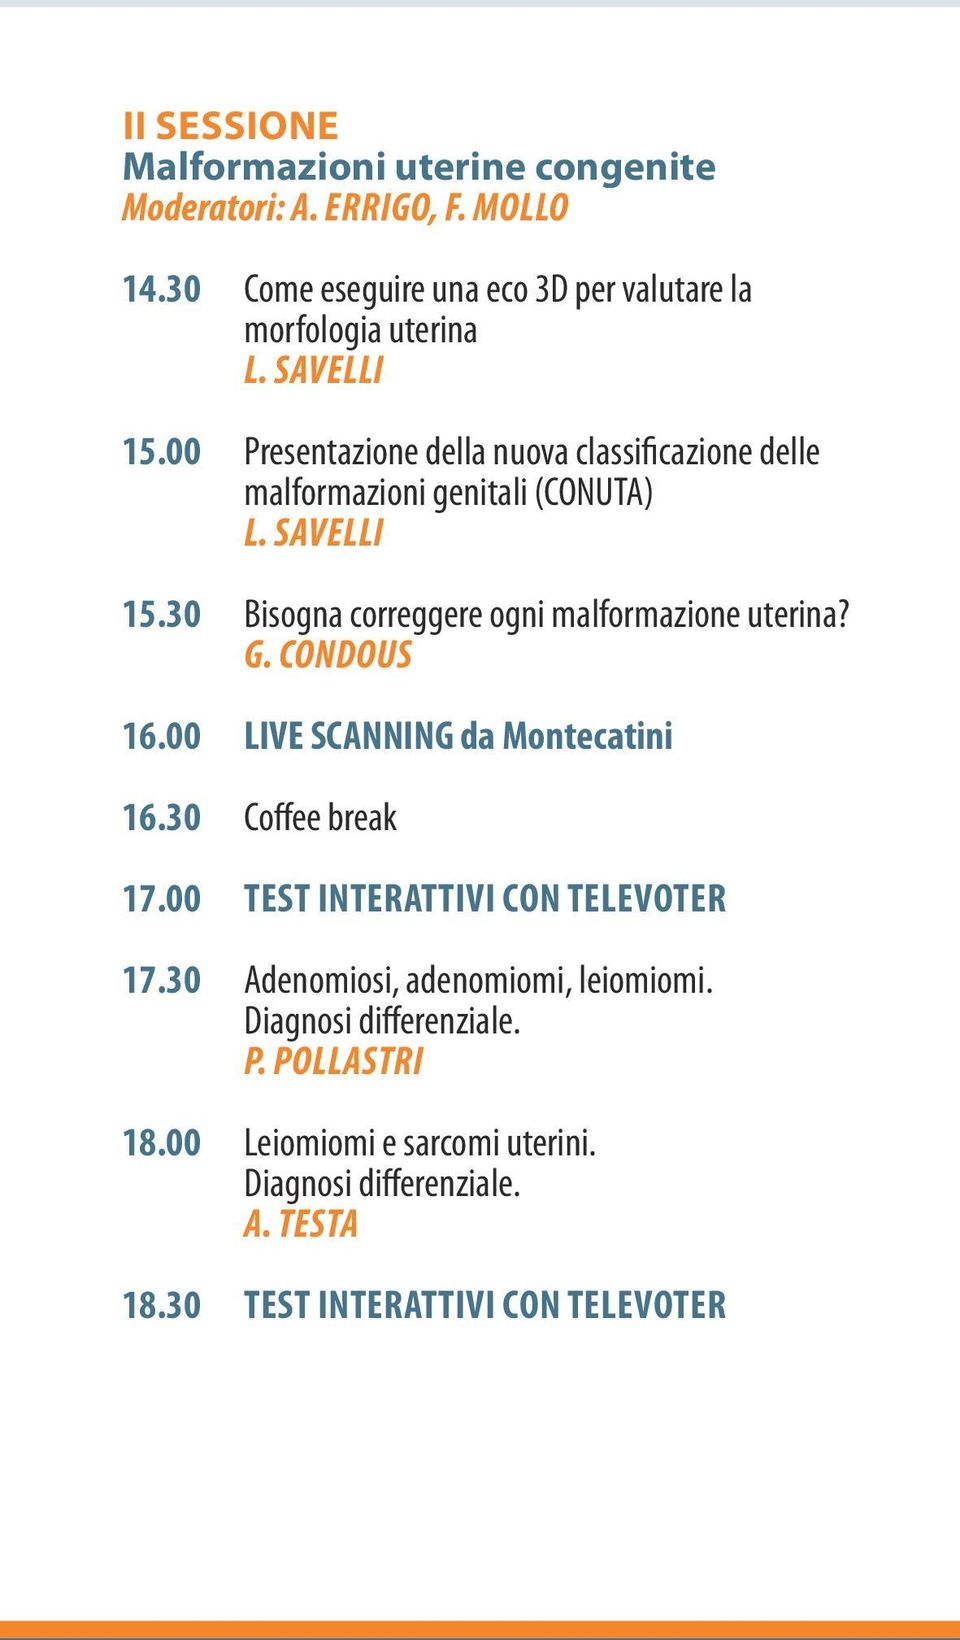 30 Bisogna correggere ogni malformazione uterina? 16.00 LIVE SCANNING da Montecatini 16.30 Coffee break 17.00 TEST INTERATTIVI CON TELEVOTER 17.